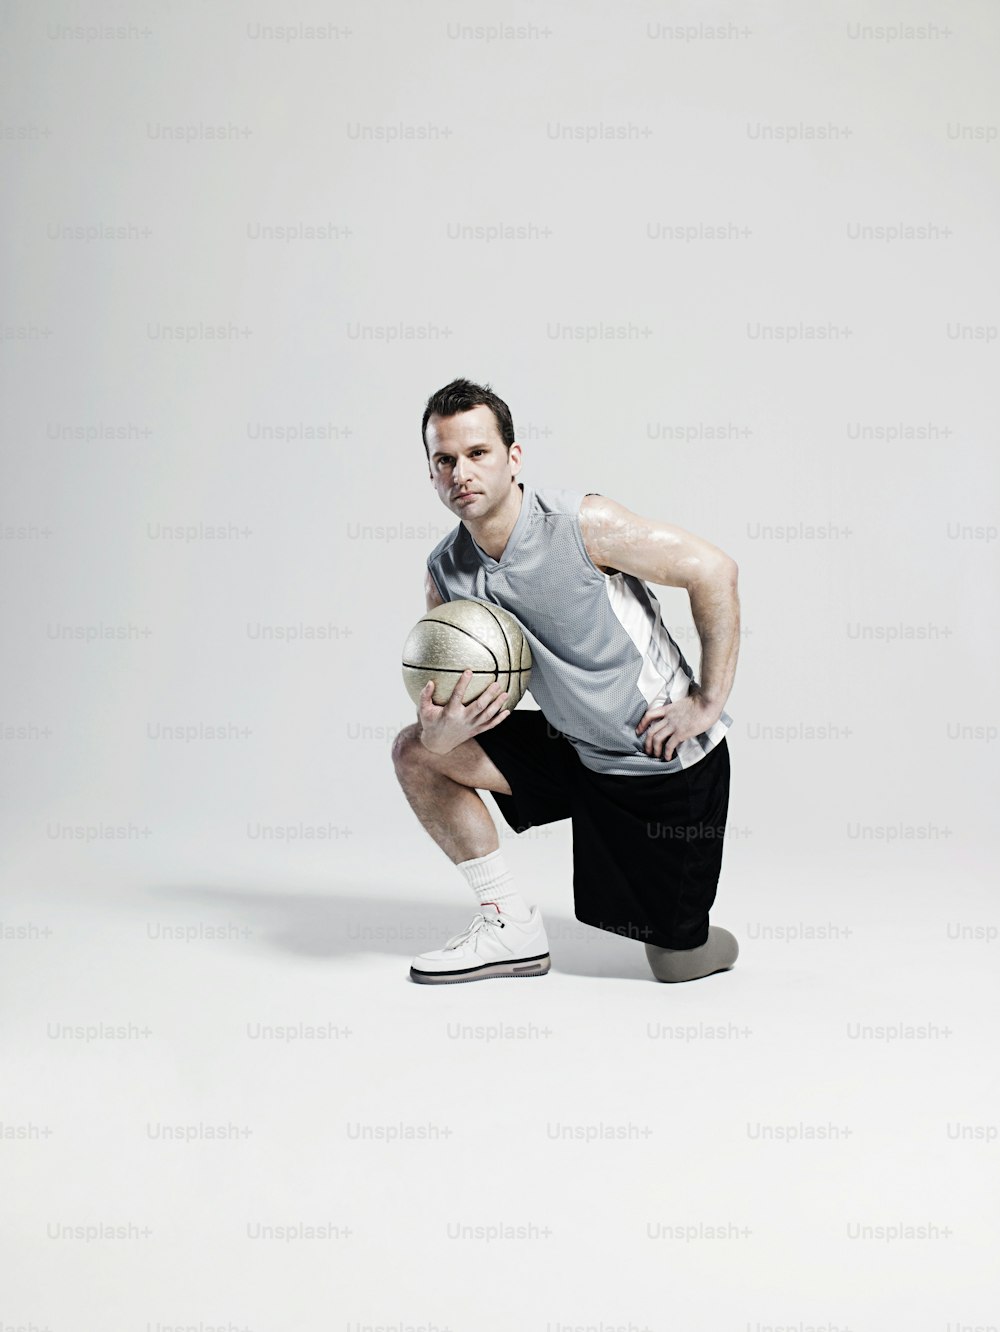 Un uomo inginocchiato con in mano un pallone da basket